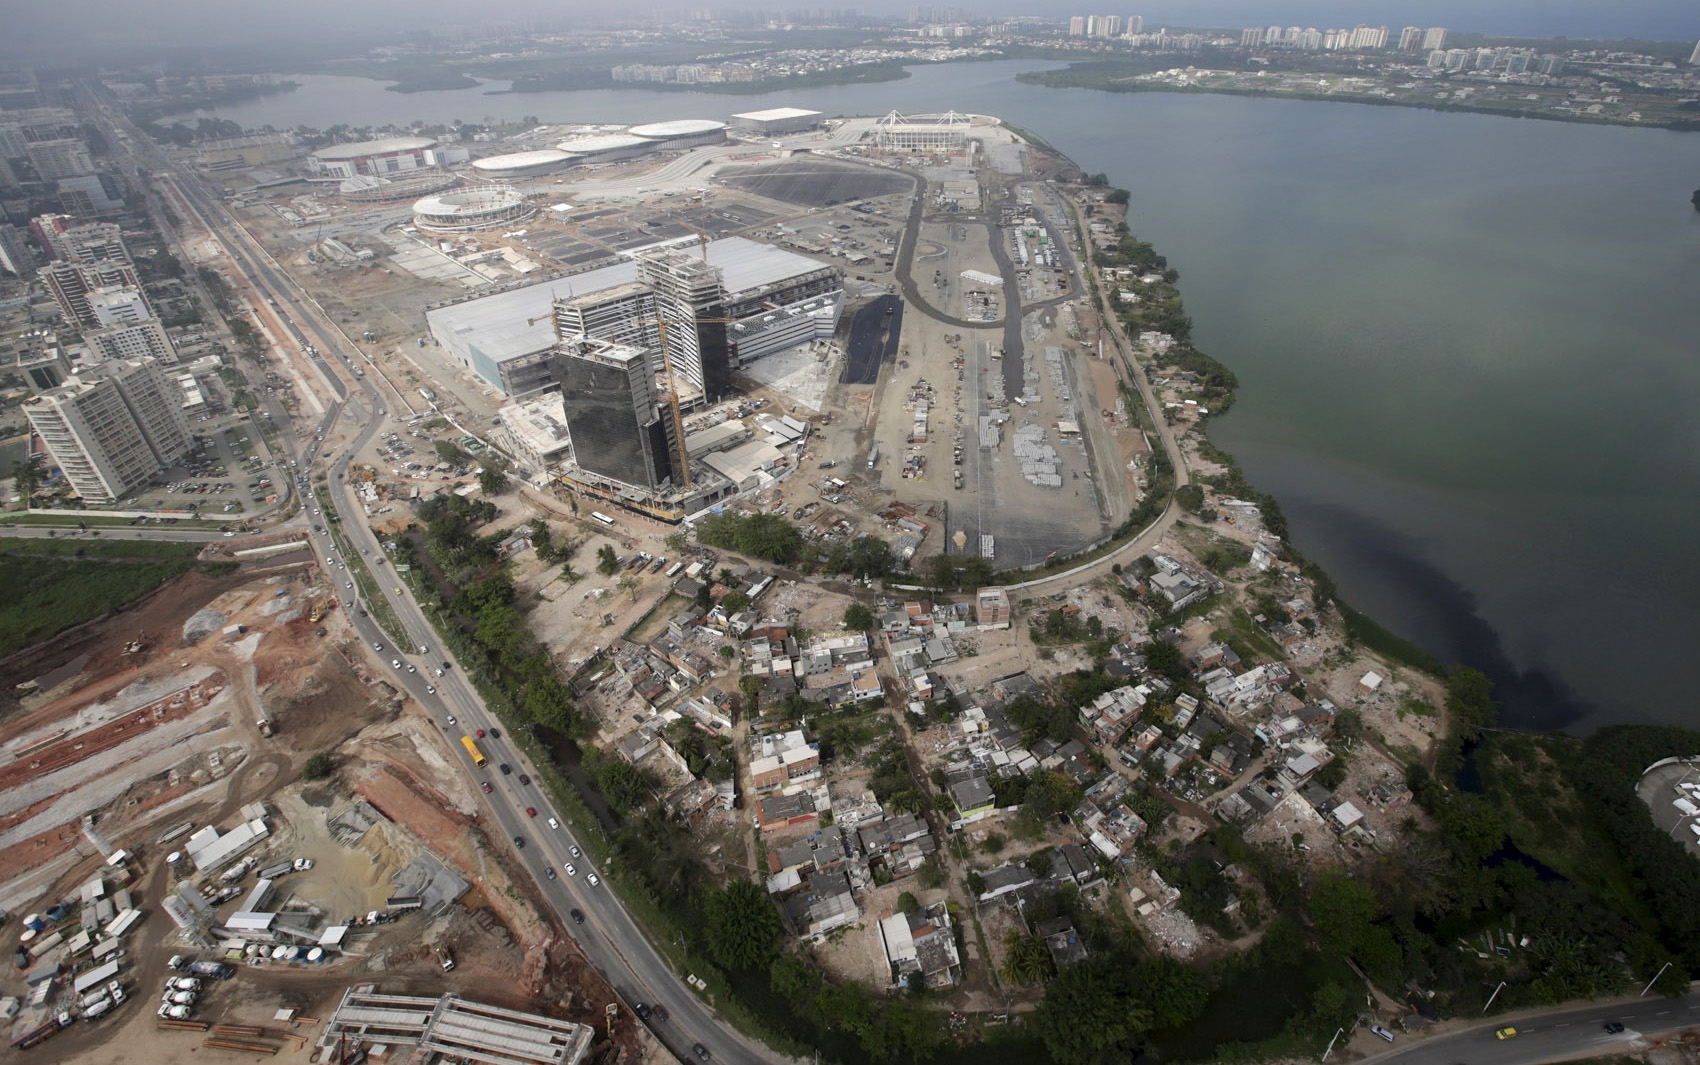 Imagens aéreas mostram a Vila Autódromo, na Barra da Tijuca, na Zona Oeste do Rio de Janeiro. A comunidade é cercada por obras dos Jogos Olímpicos e Paralímpicos